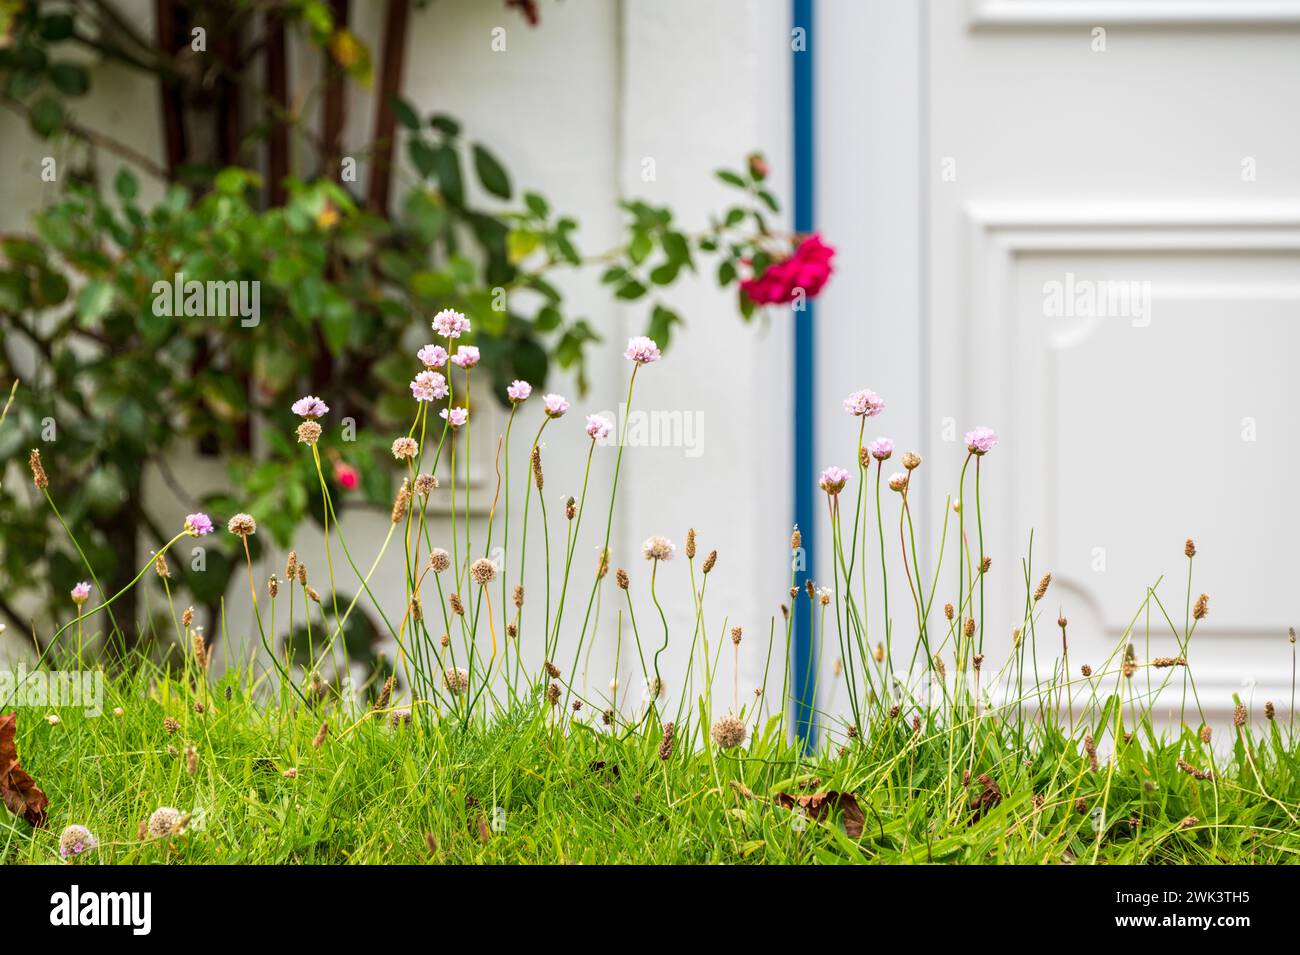 Insel Amrum Nordfriesland - Gartenidyle Blumen auf einem Rasen im Hintergrund ein weißes Friesenhaus Foto Stock